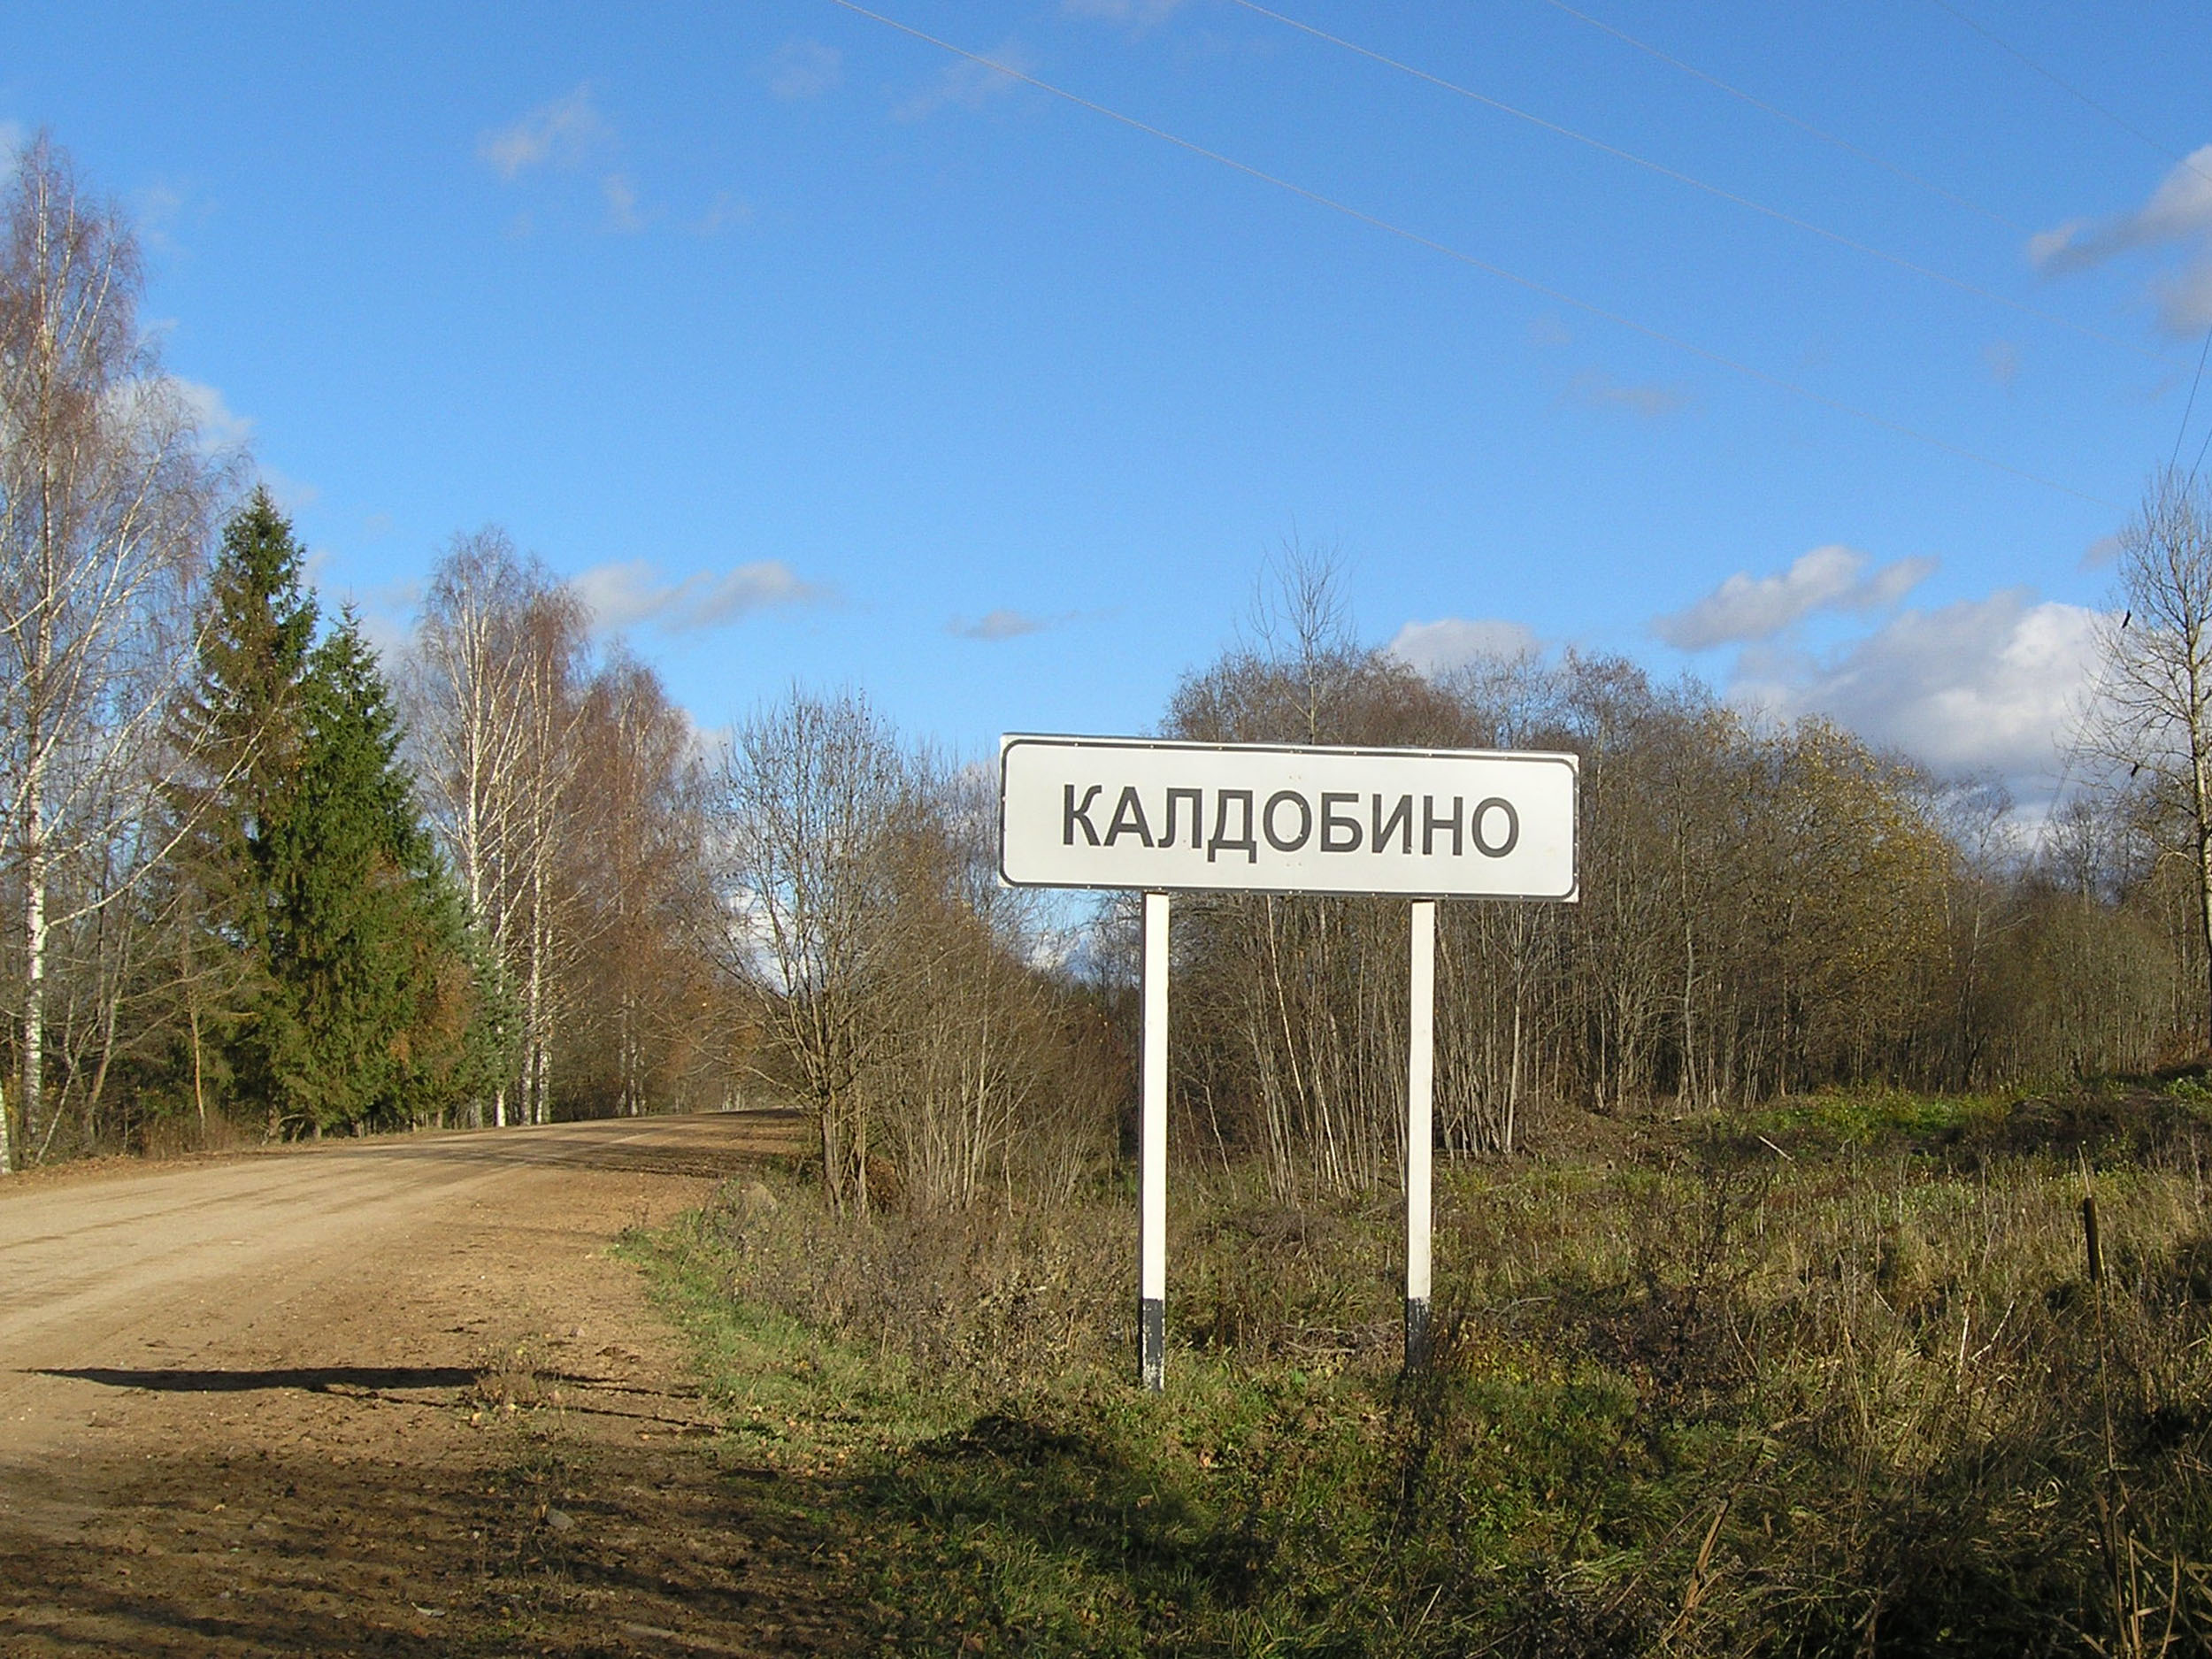 Калдобино, Пореченская волость, Великолукский район, Псковская область.